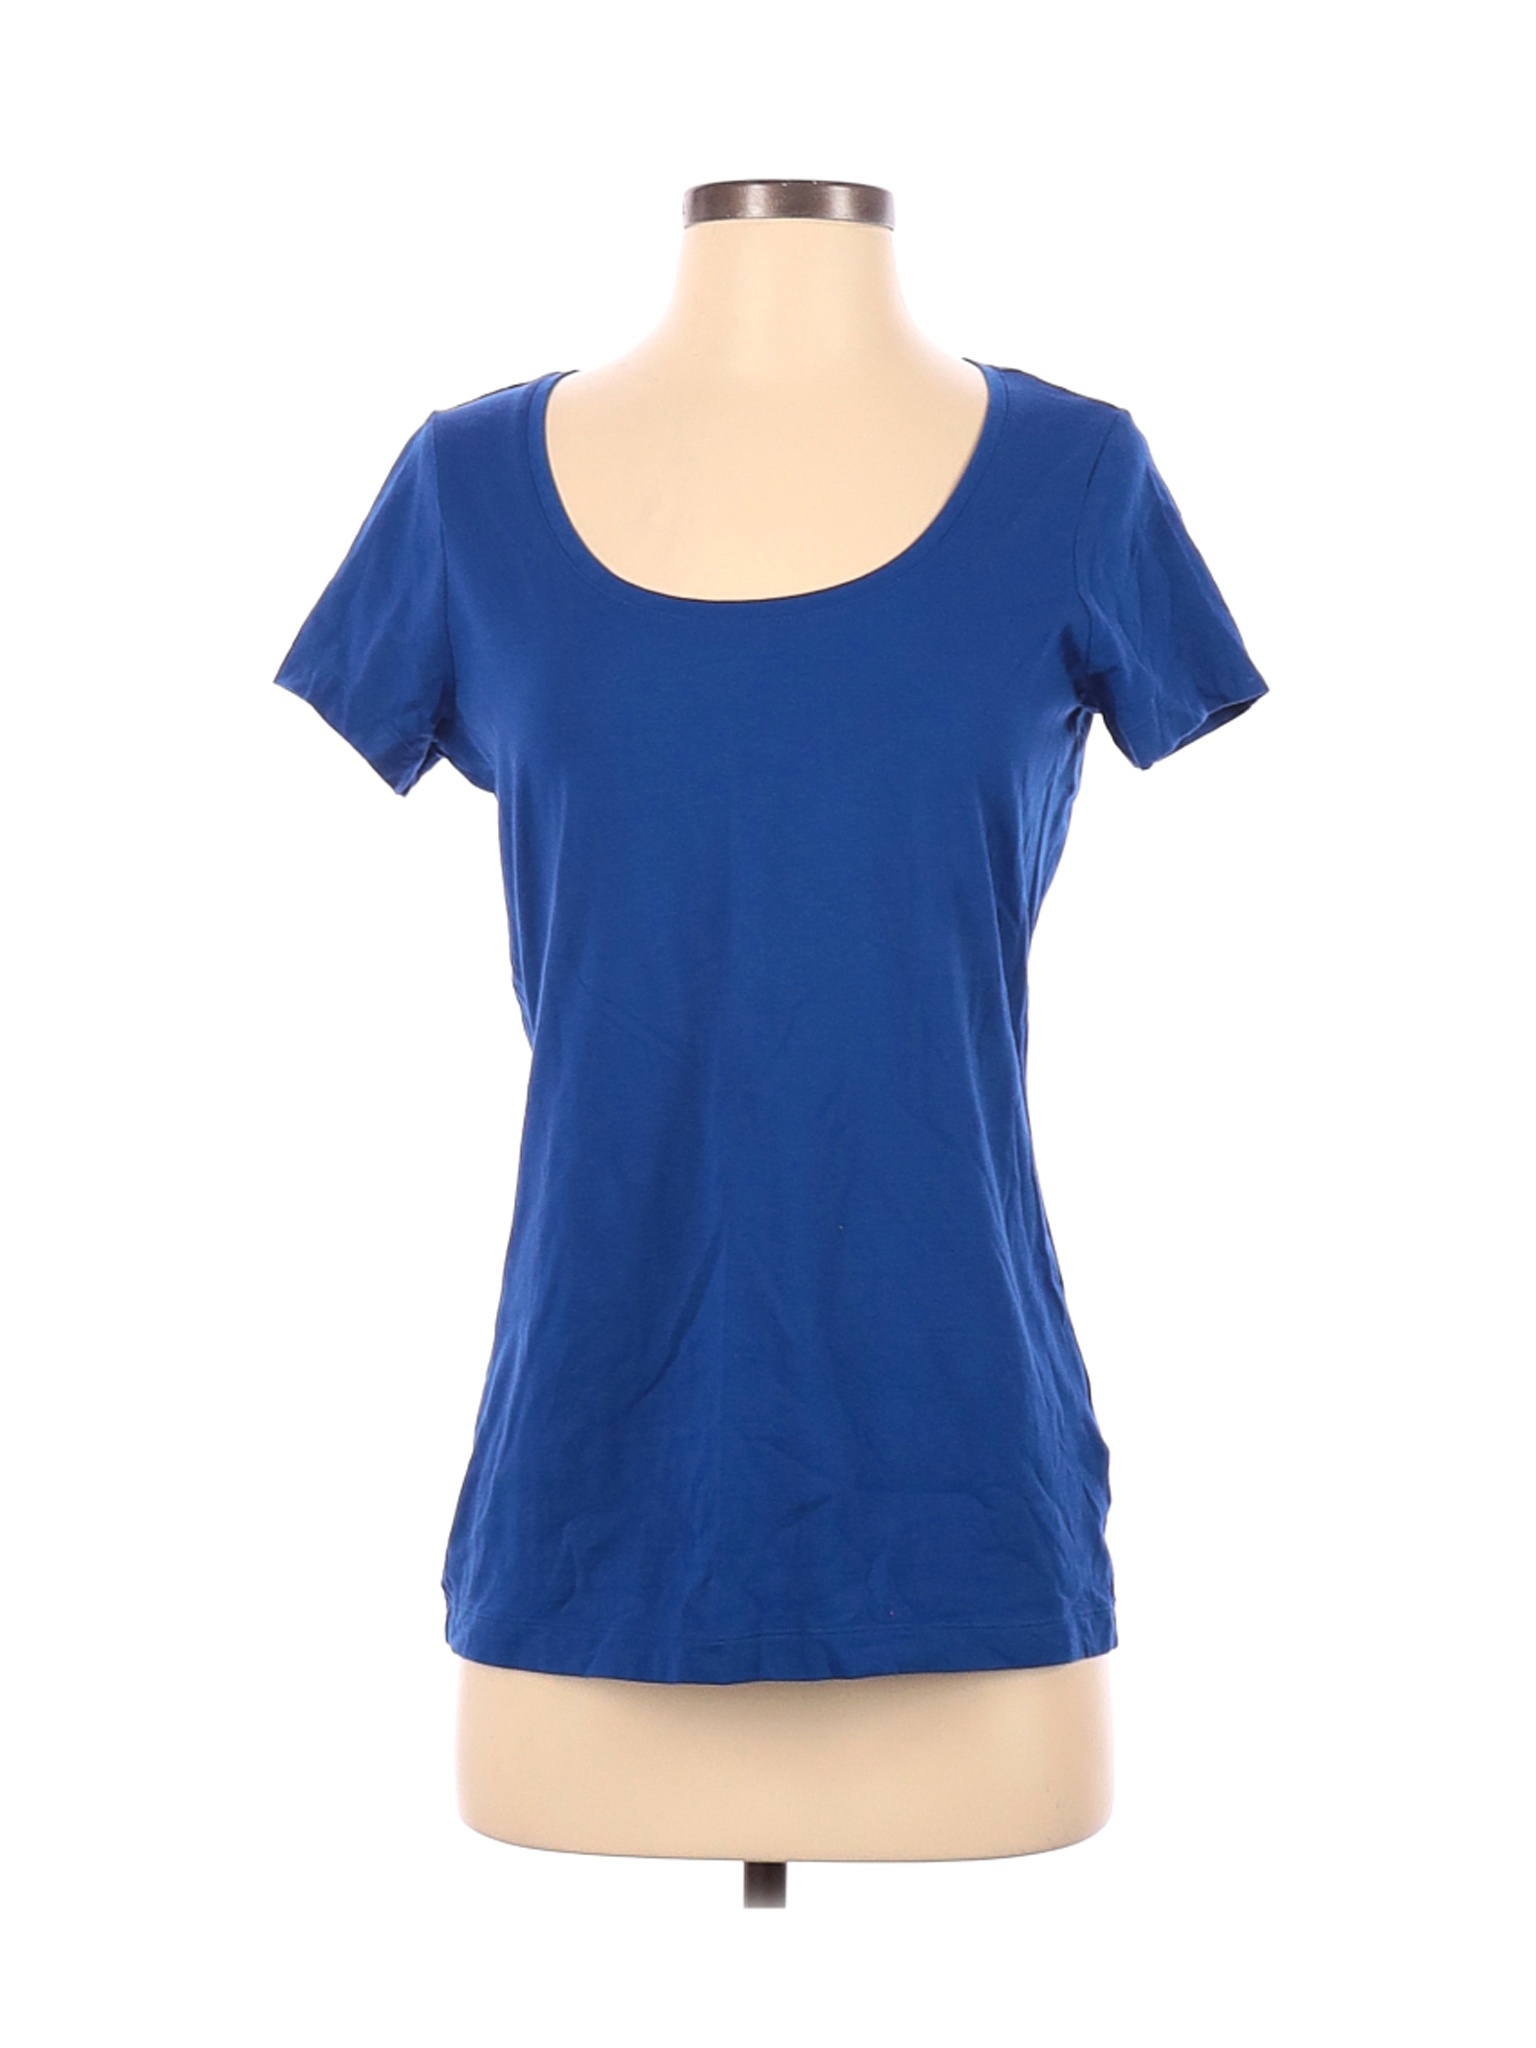 Lands' End Women Blue Short Sleeve T-Shirt S | eBay